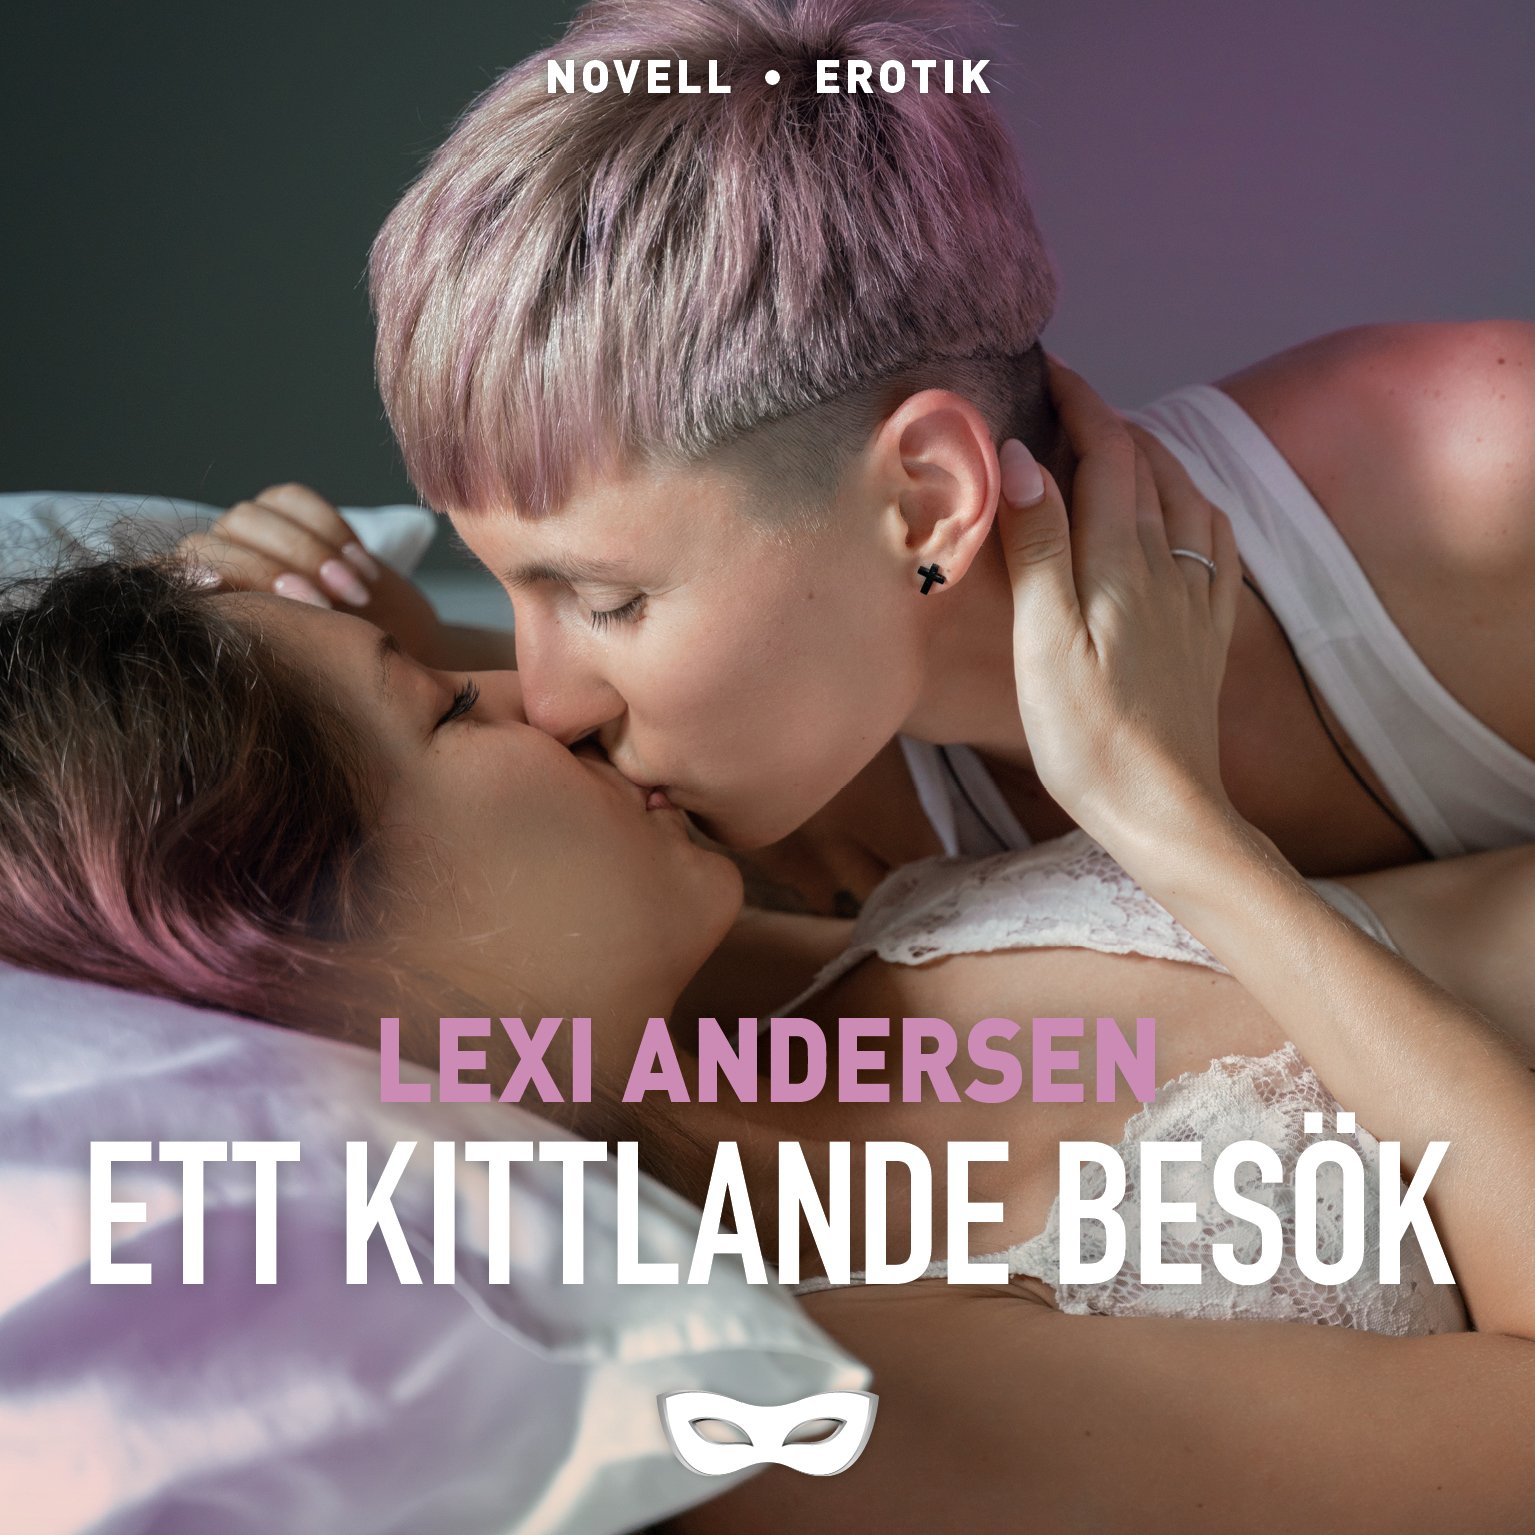 LEXI Lexi Andersen Ett kittlande besök omslag audio.jpg